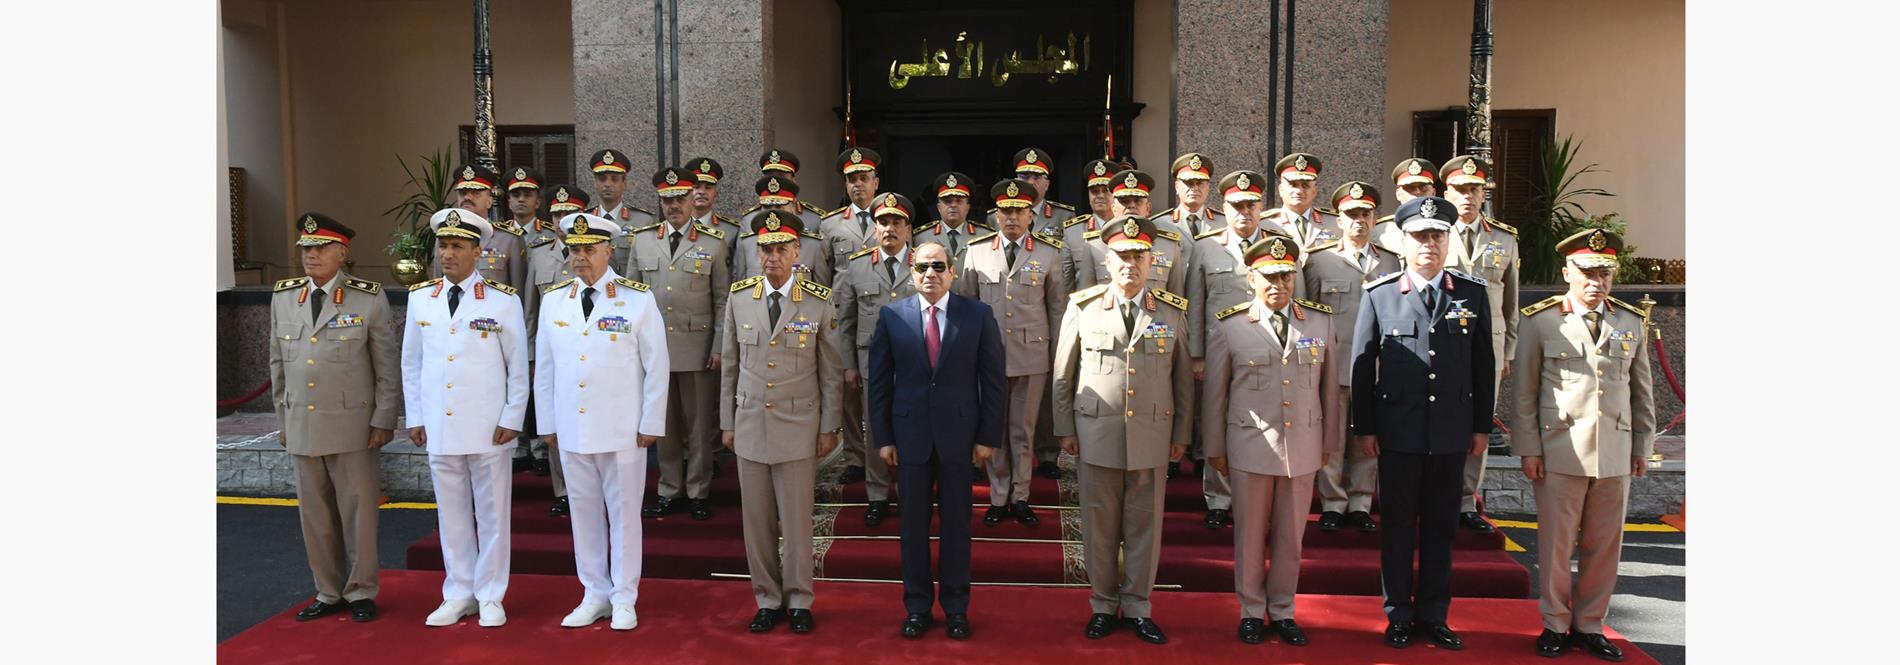 الرئيس عبد الفتاح السيسي يترأس اجتماع المجلس الأعلى للقوات المسلحة